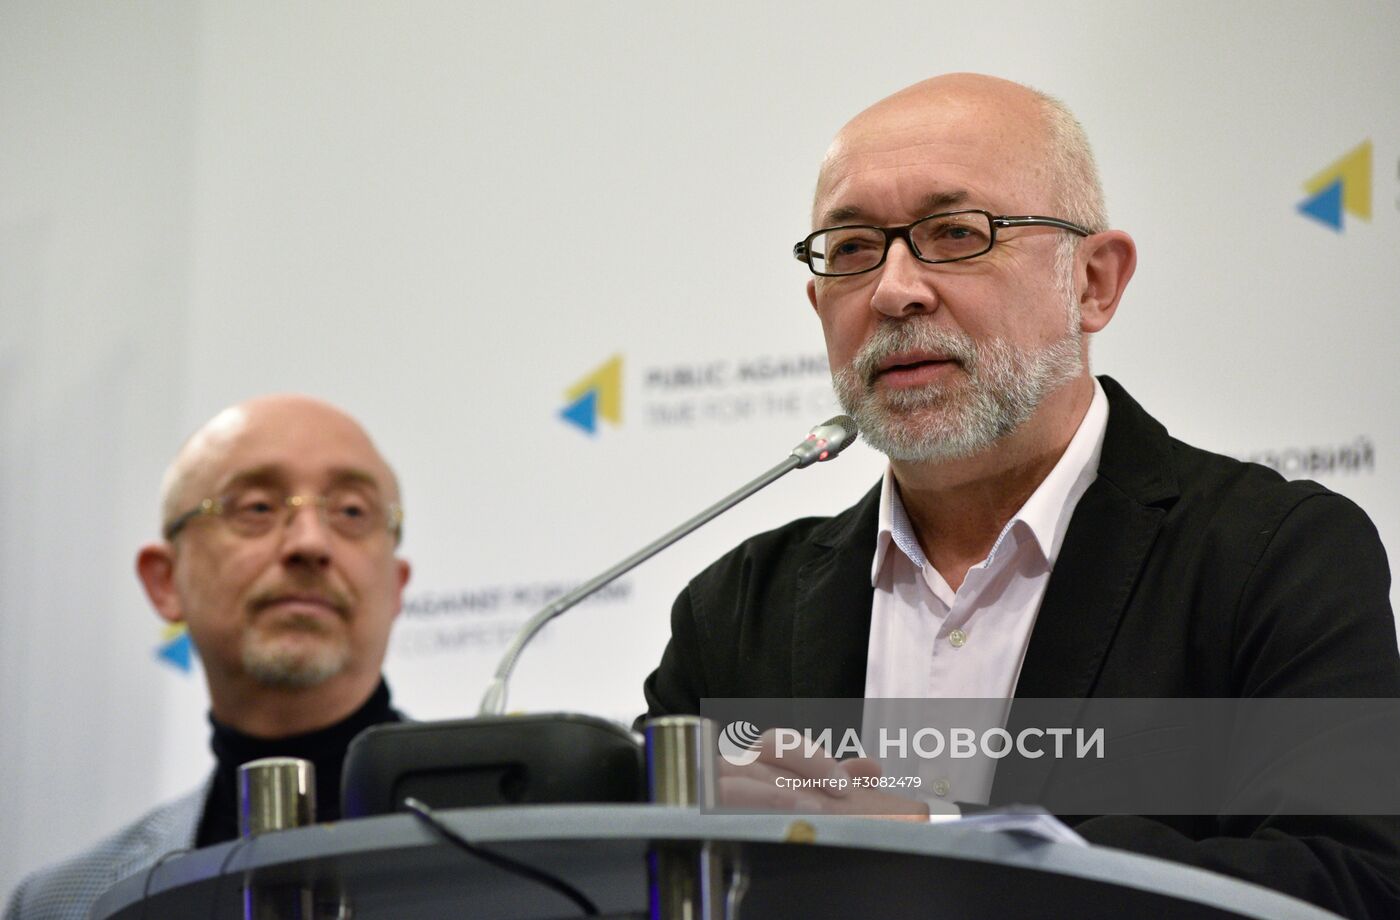 Пресс-конференция, посвященная проведению конкурса "Евровидение-2017", в Киеве